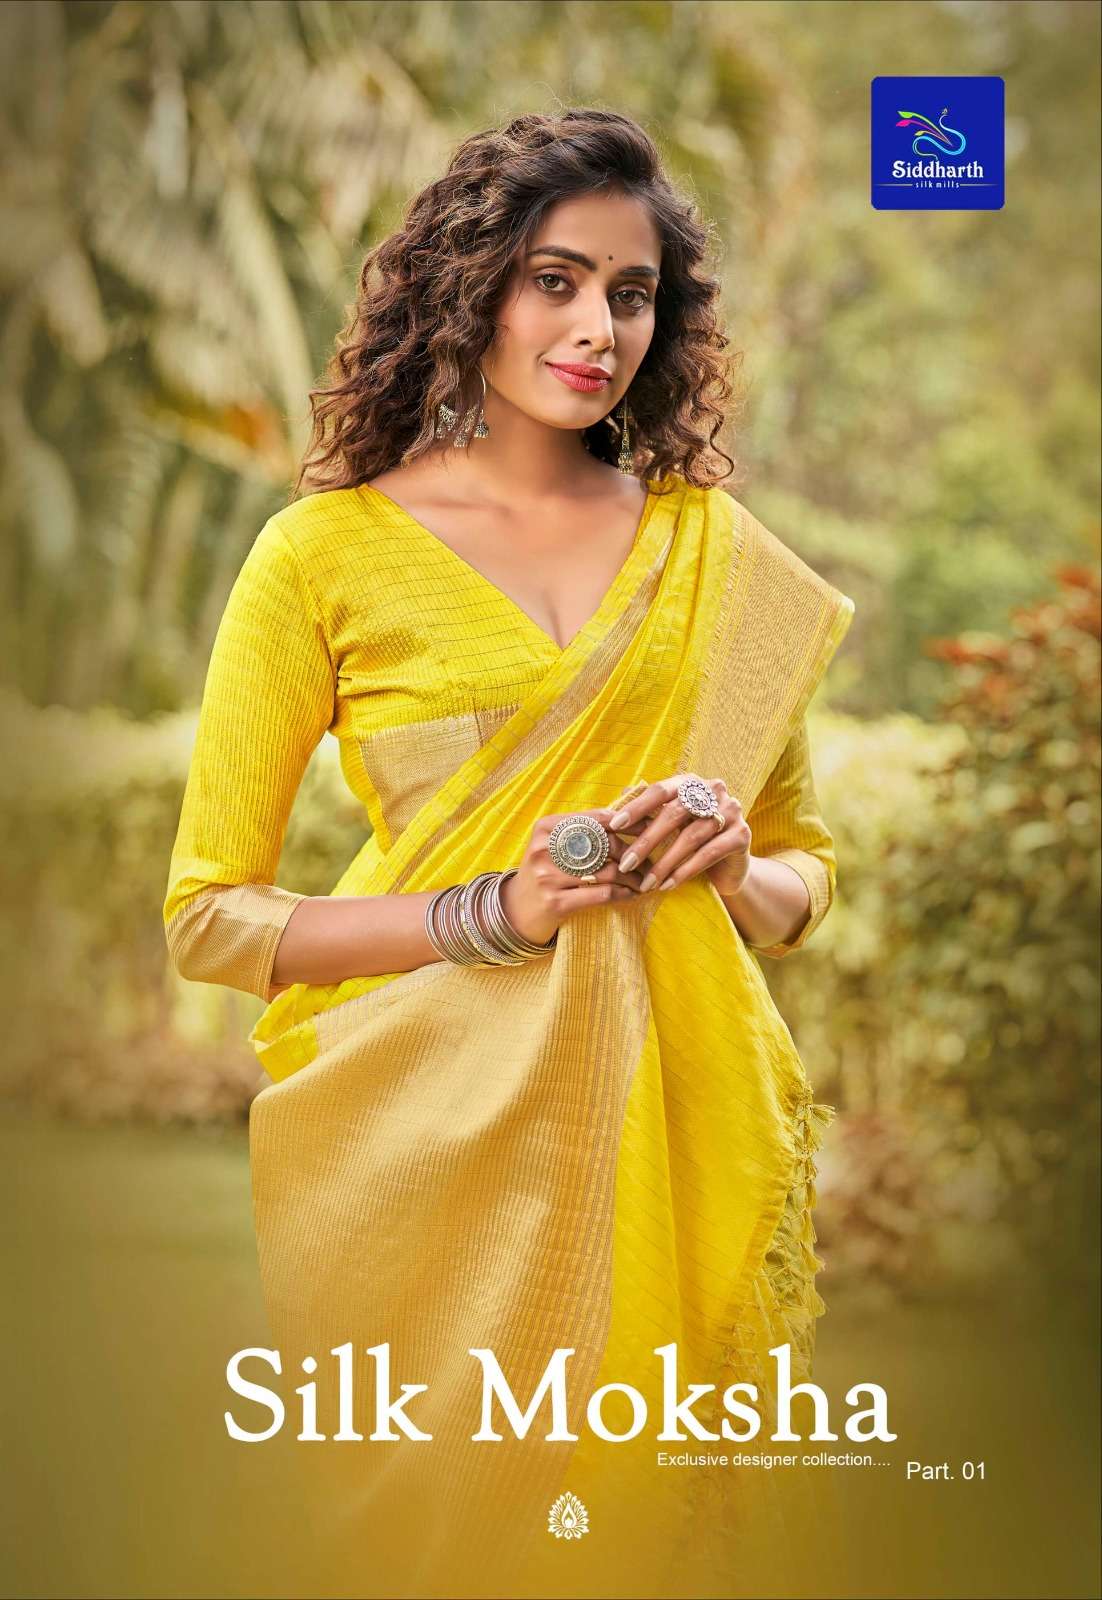 siddharth silk moksha fabulous saree design only at kc surat 